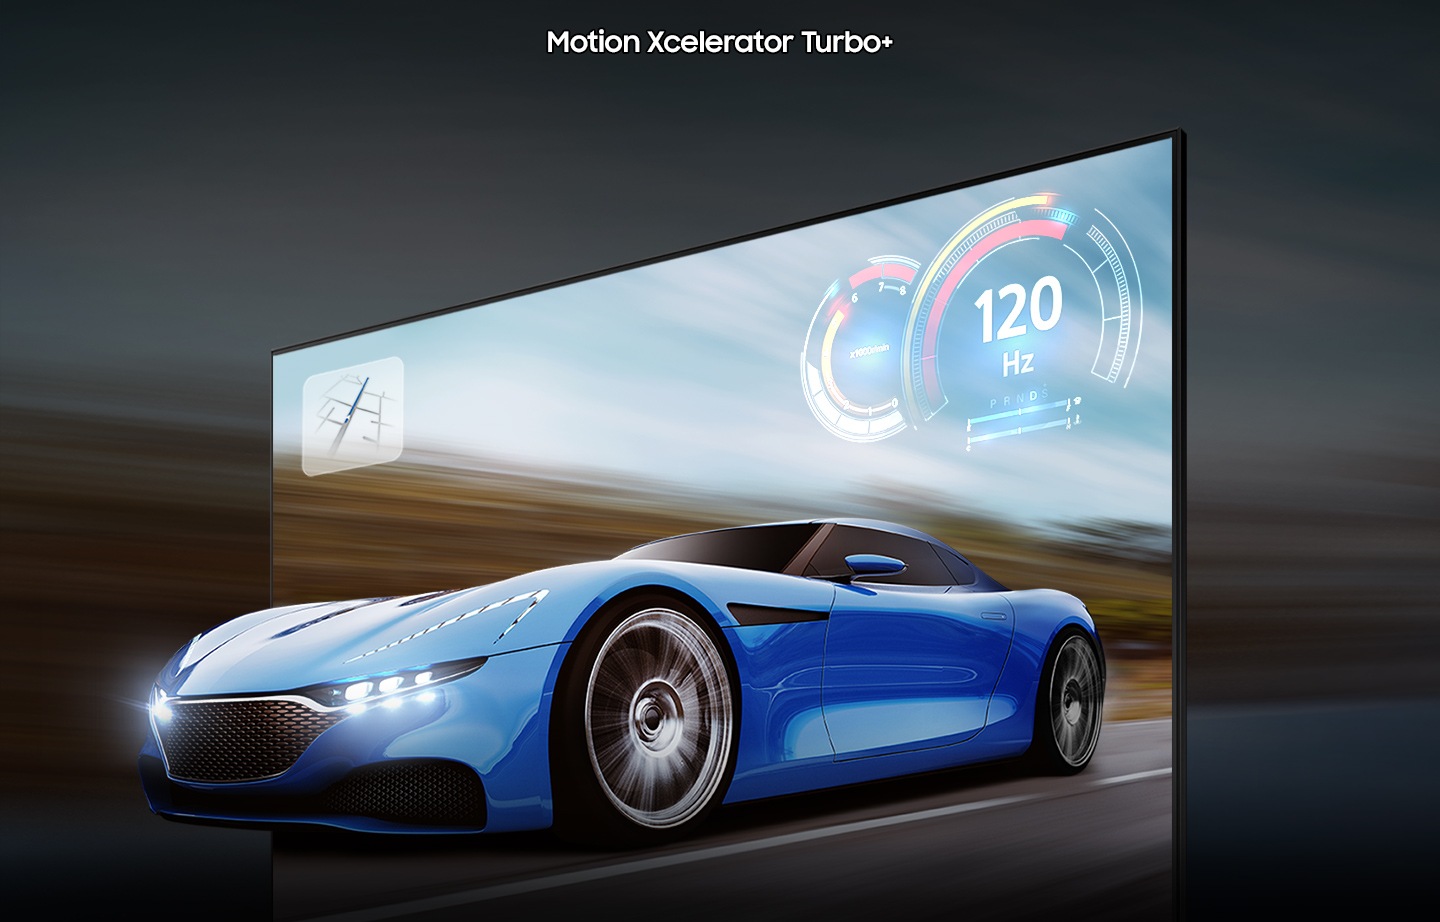 تبدو سيارة السباق التي تظهر على شاشة التلفزيون أكثر وضوحًا وأكثر وضوحًا على تلفزيون QLED مقارنة بالتلفزيون التقليدي بسبب تقنية الحركة xcelerator turbo +.